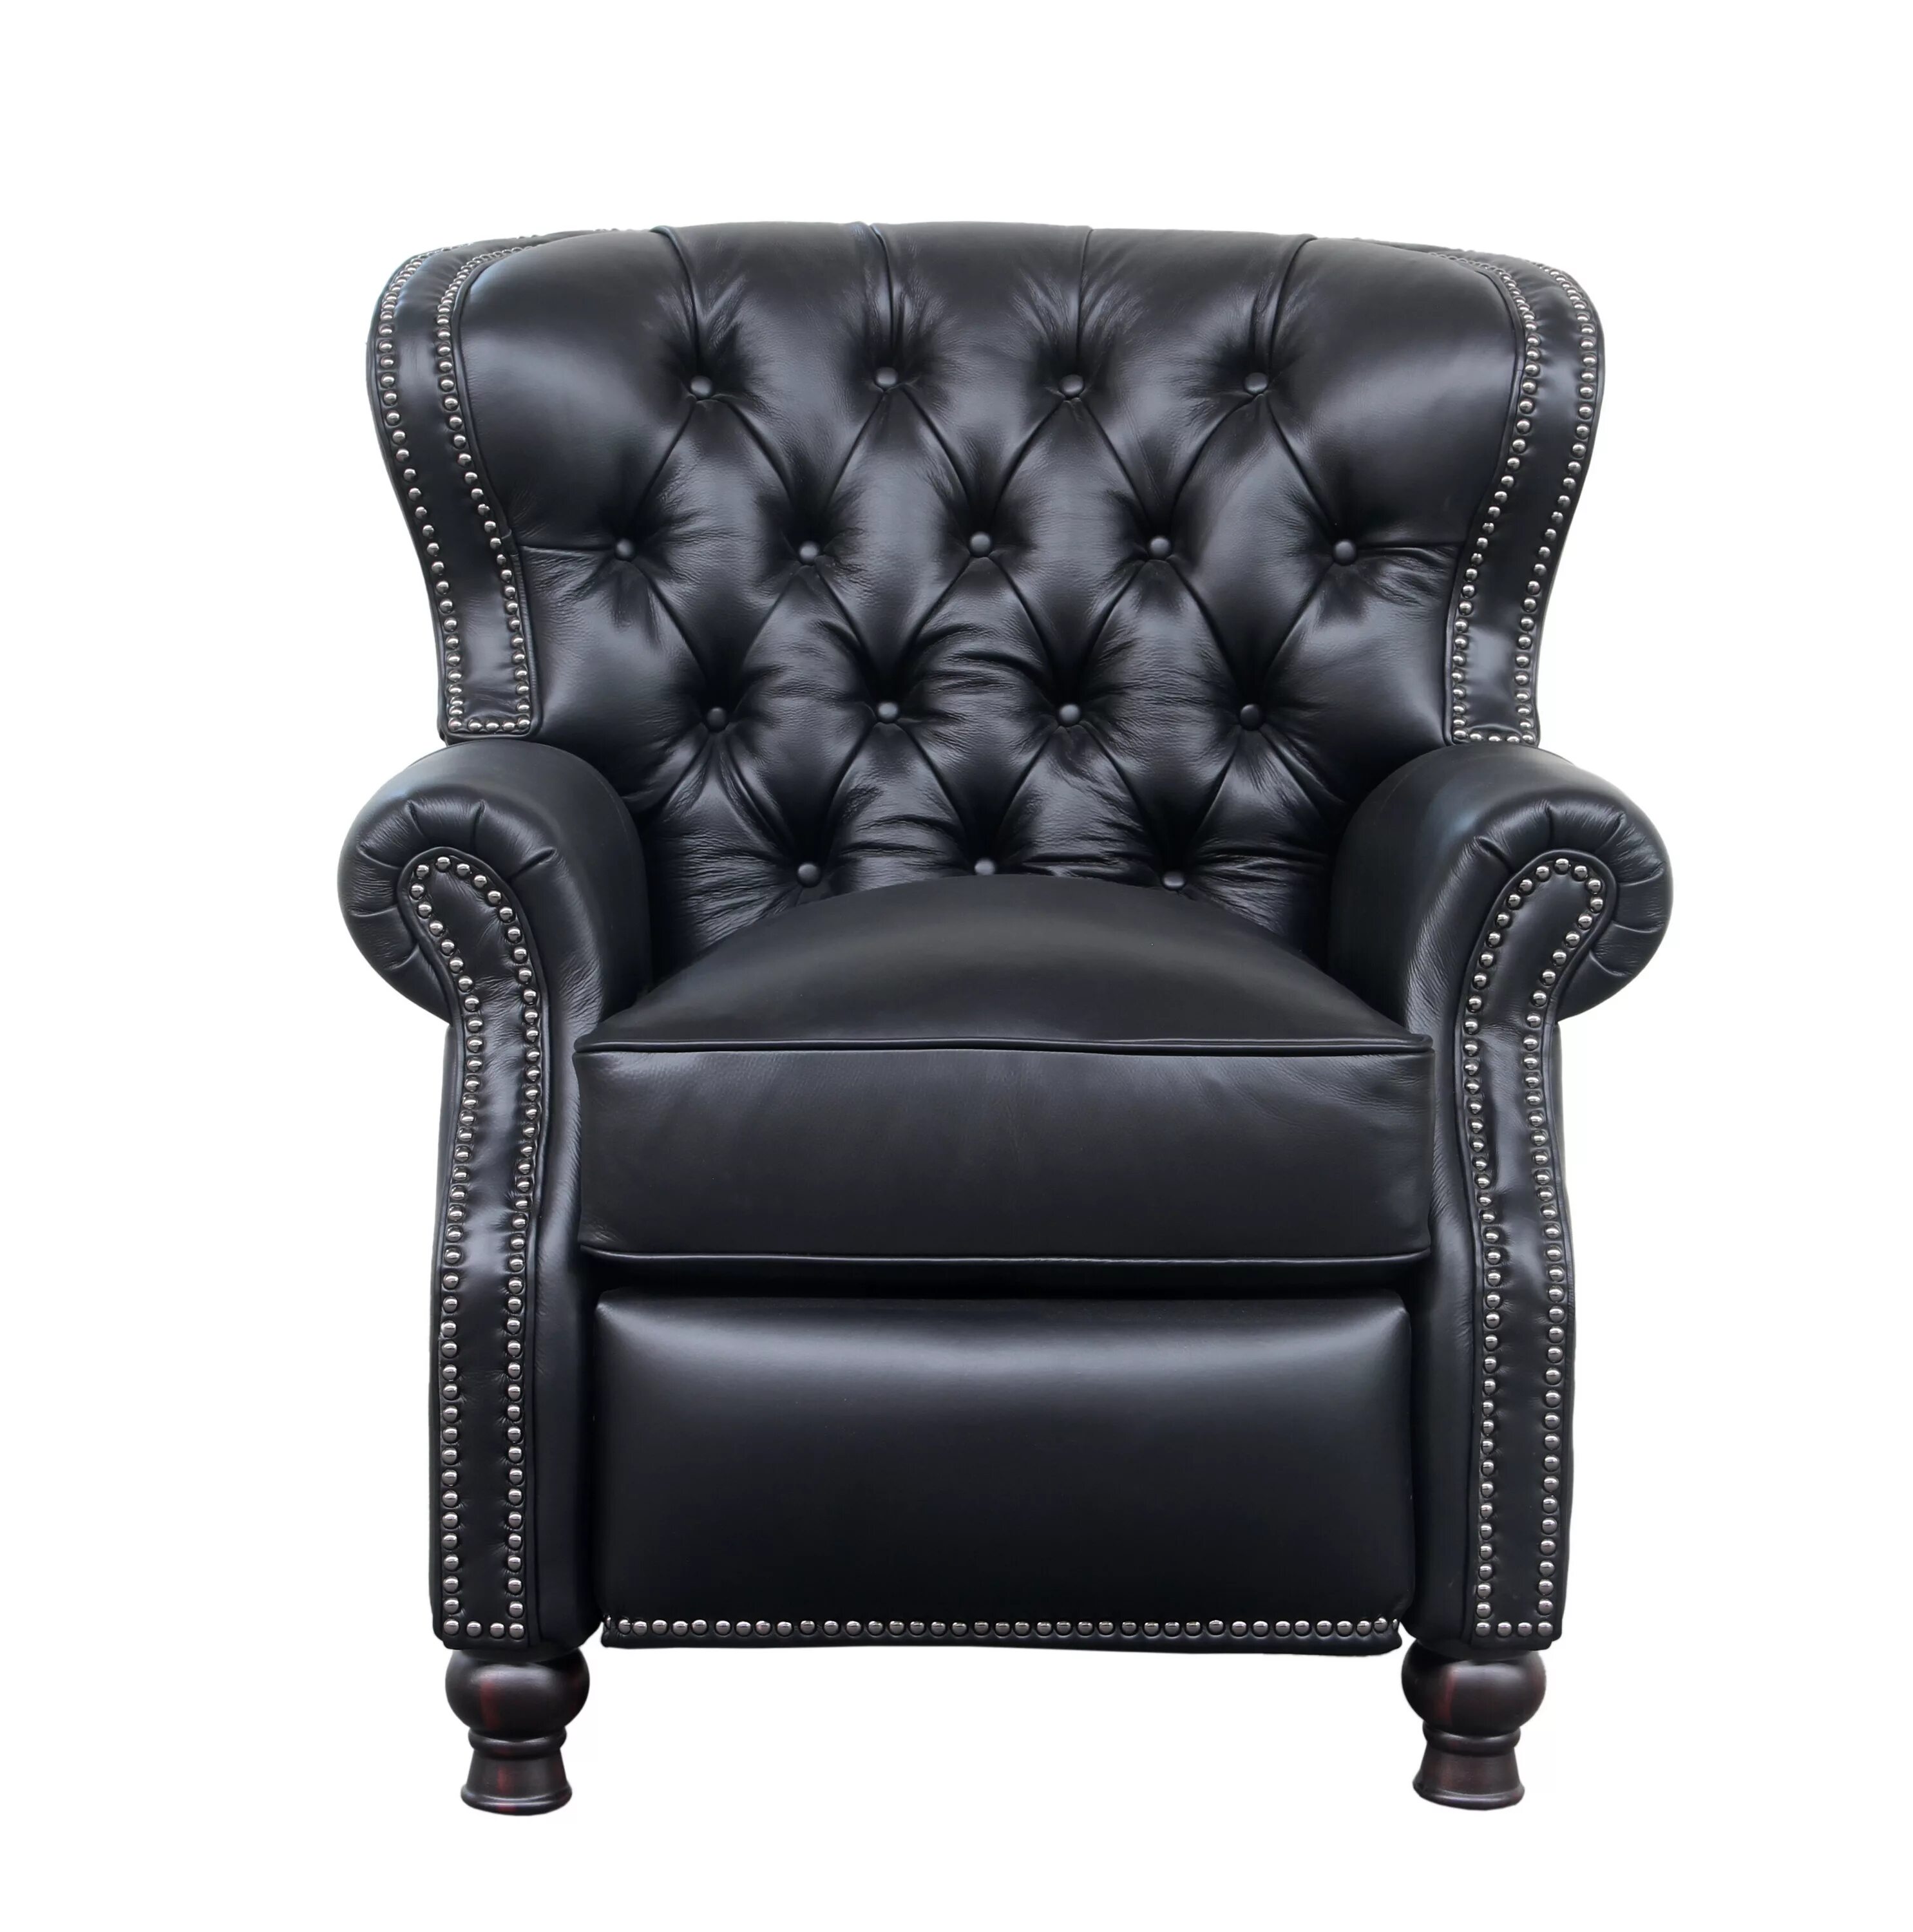 Высокое кожаное кресло. Кресло кожаное. Мягкое кожаное кресло. Кожаный стул кресло. Черное кожаное кресло.